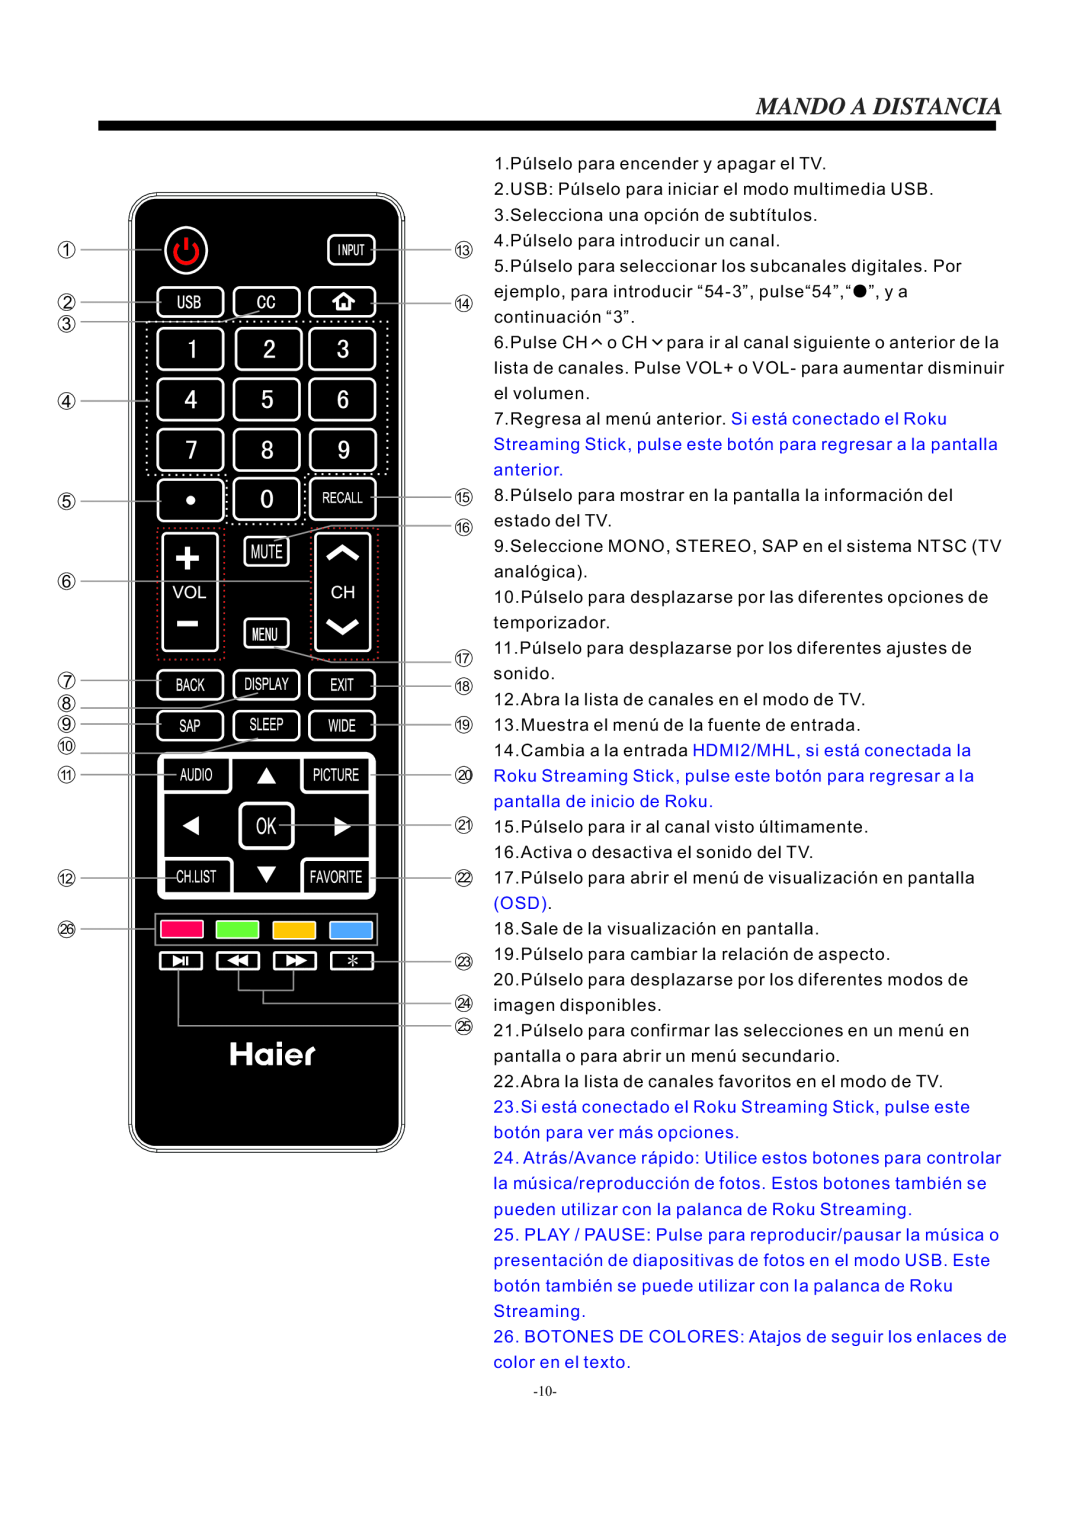 Haier LE55F32800 manual 1.Púlselo para encender y apagar el TV, Cambia a la entrada HDMI2/MHL, si está conectada la 